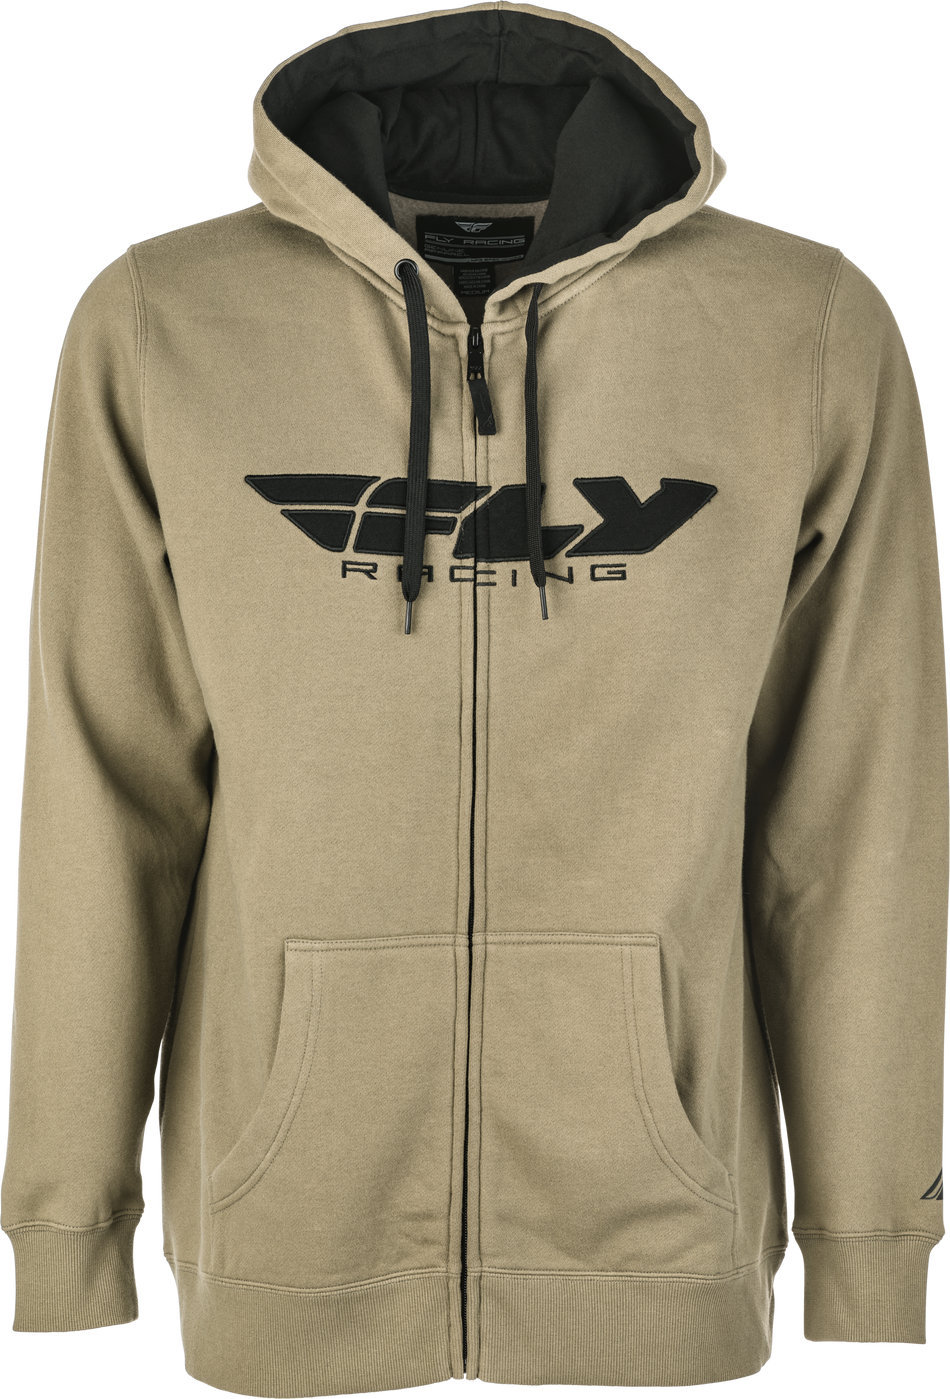 FLY RACING Fly Corporate Zip Up Hoodie Tan/Black Lg 354-0194L